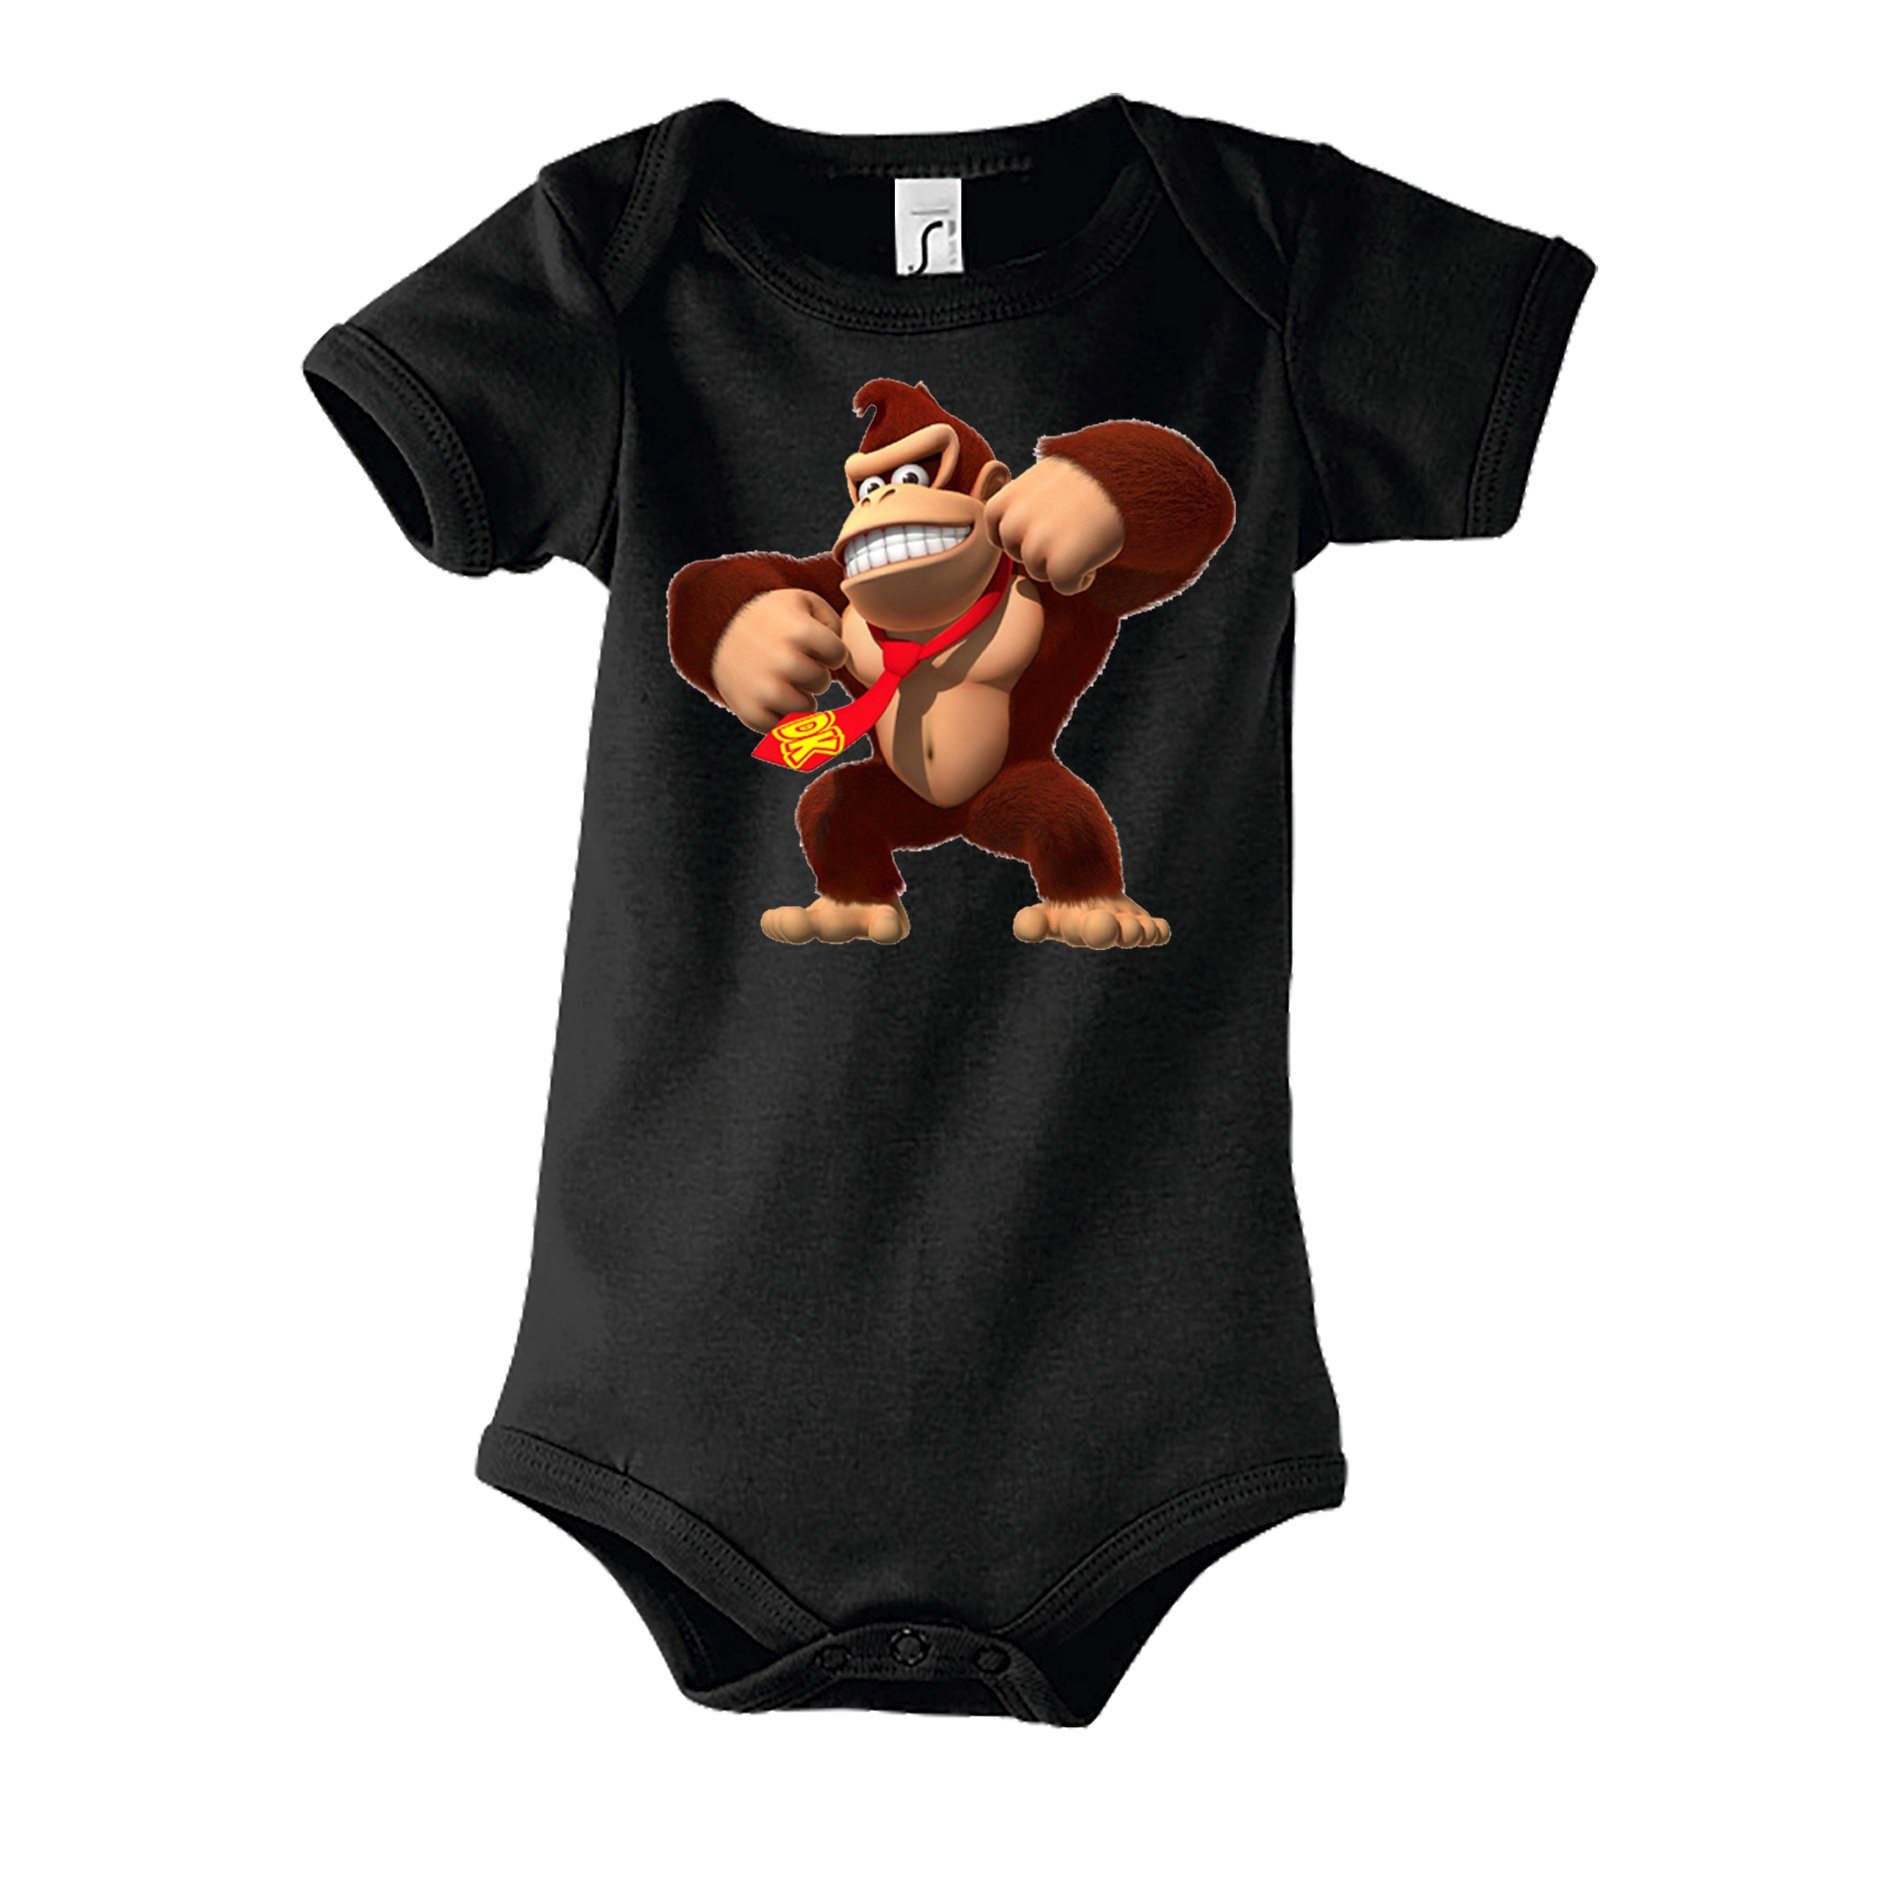 Blondie & Brownie Strampler Kinder Baby Donkey Kong Gorilla Affe Nintendo mit Druckknopf Schwarz